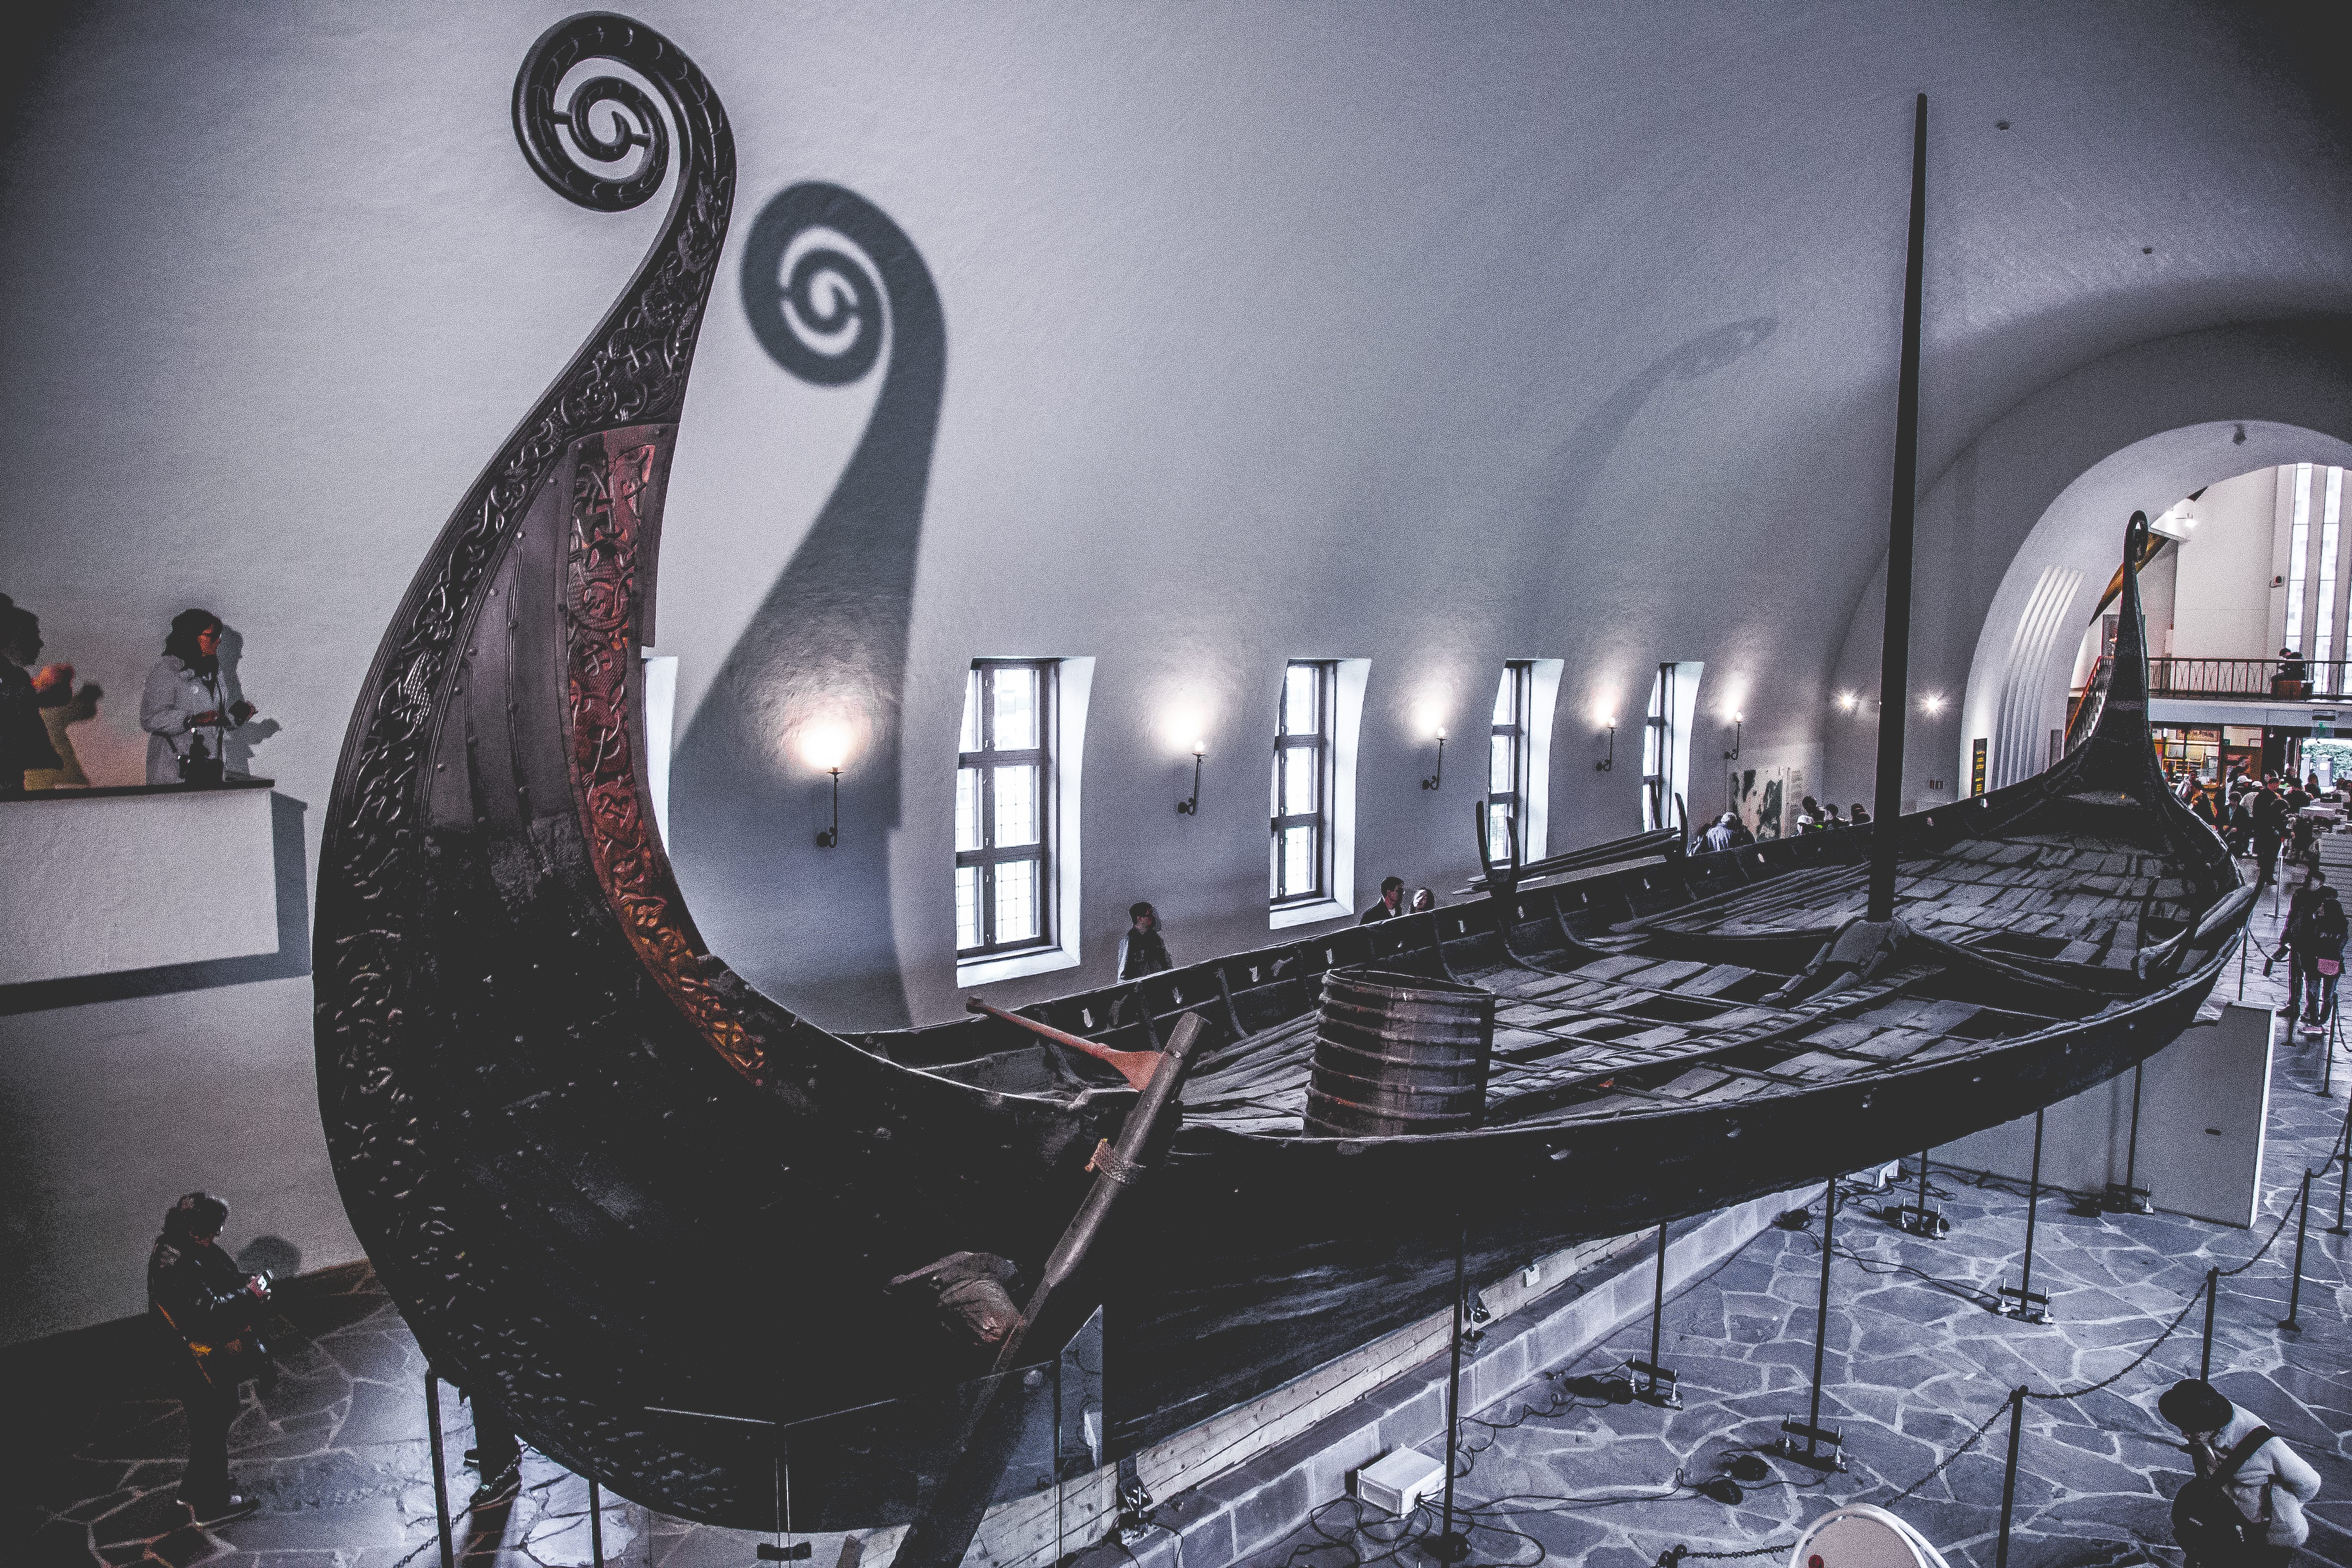 Музей кораблей викингов, Осло